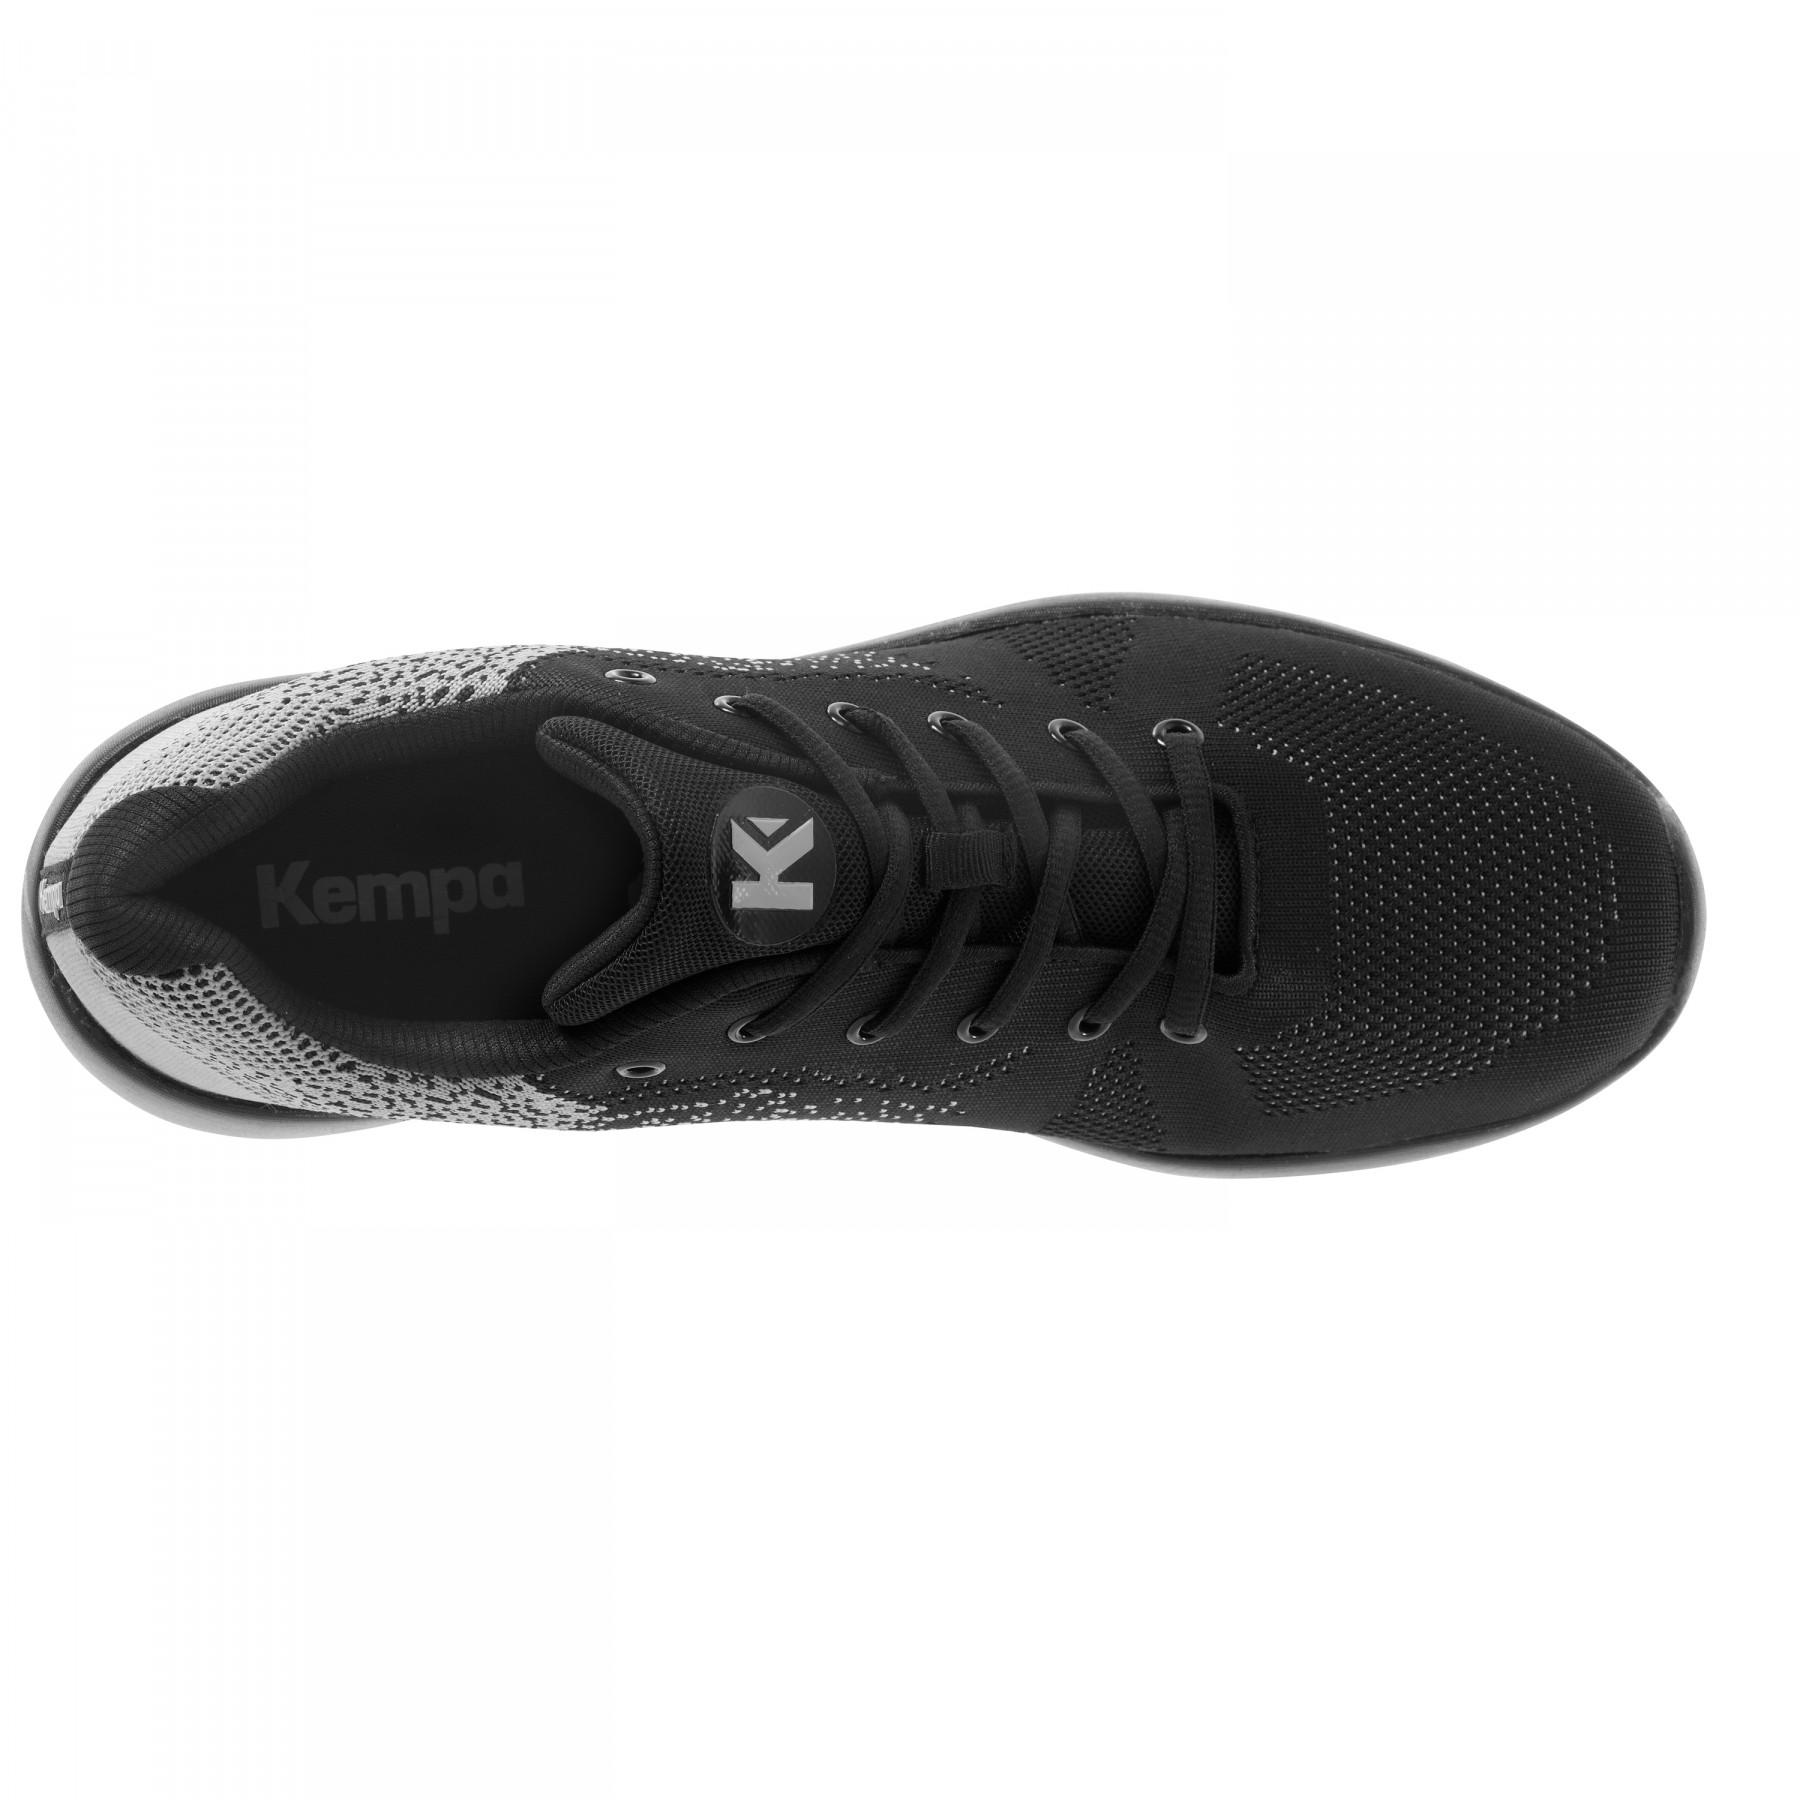 Shoes Kempa K-Float